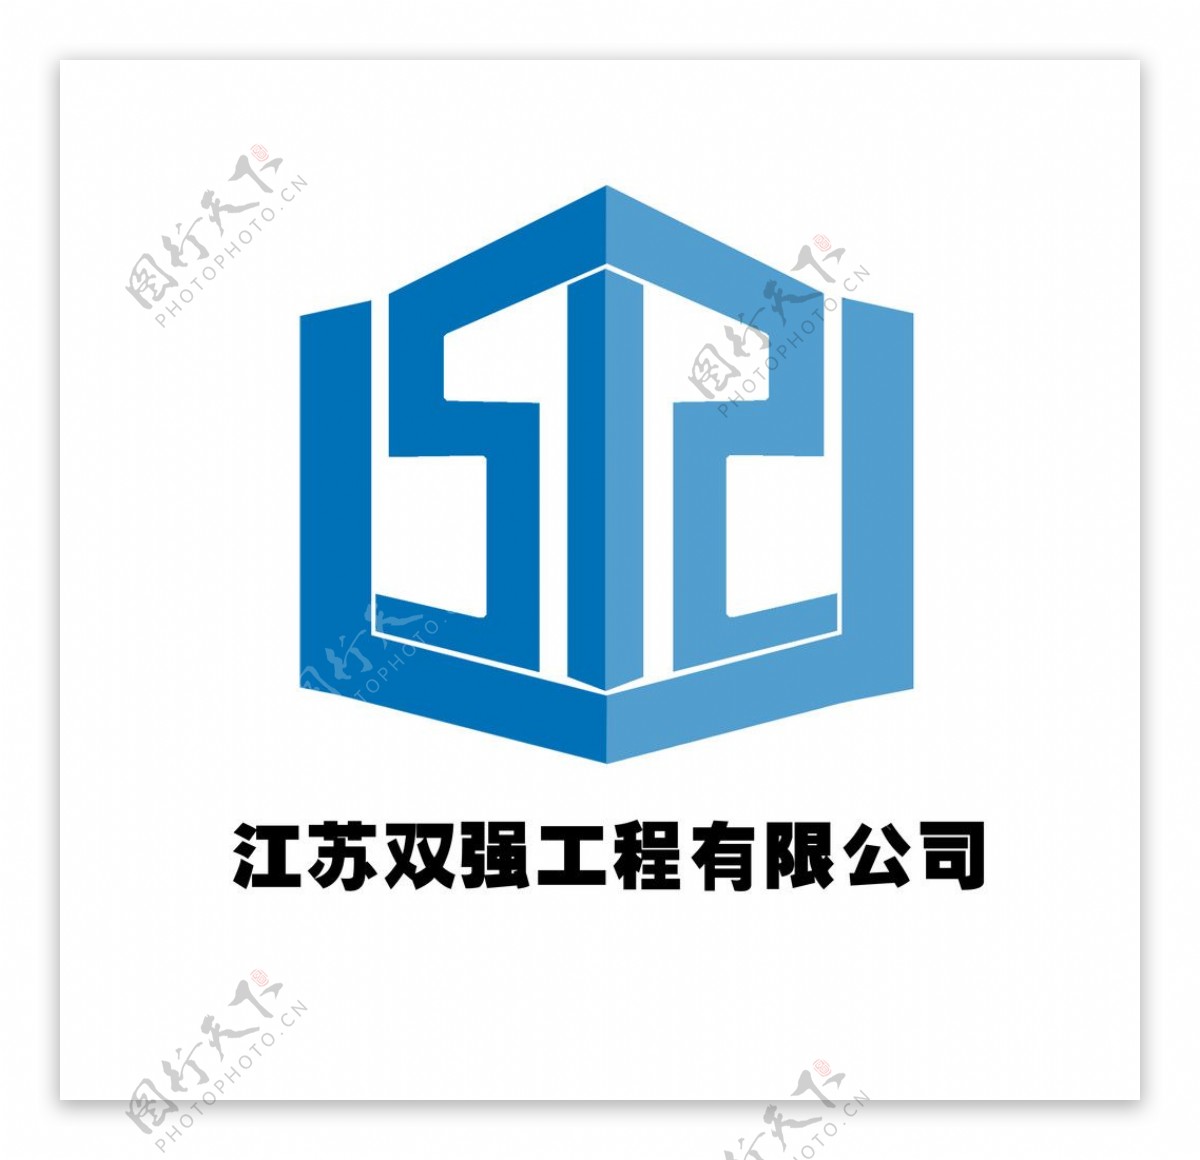 江苏双强工程有限公司标志设计图片